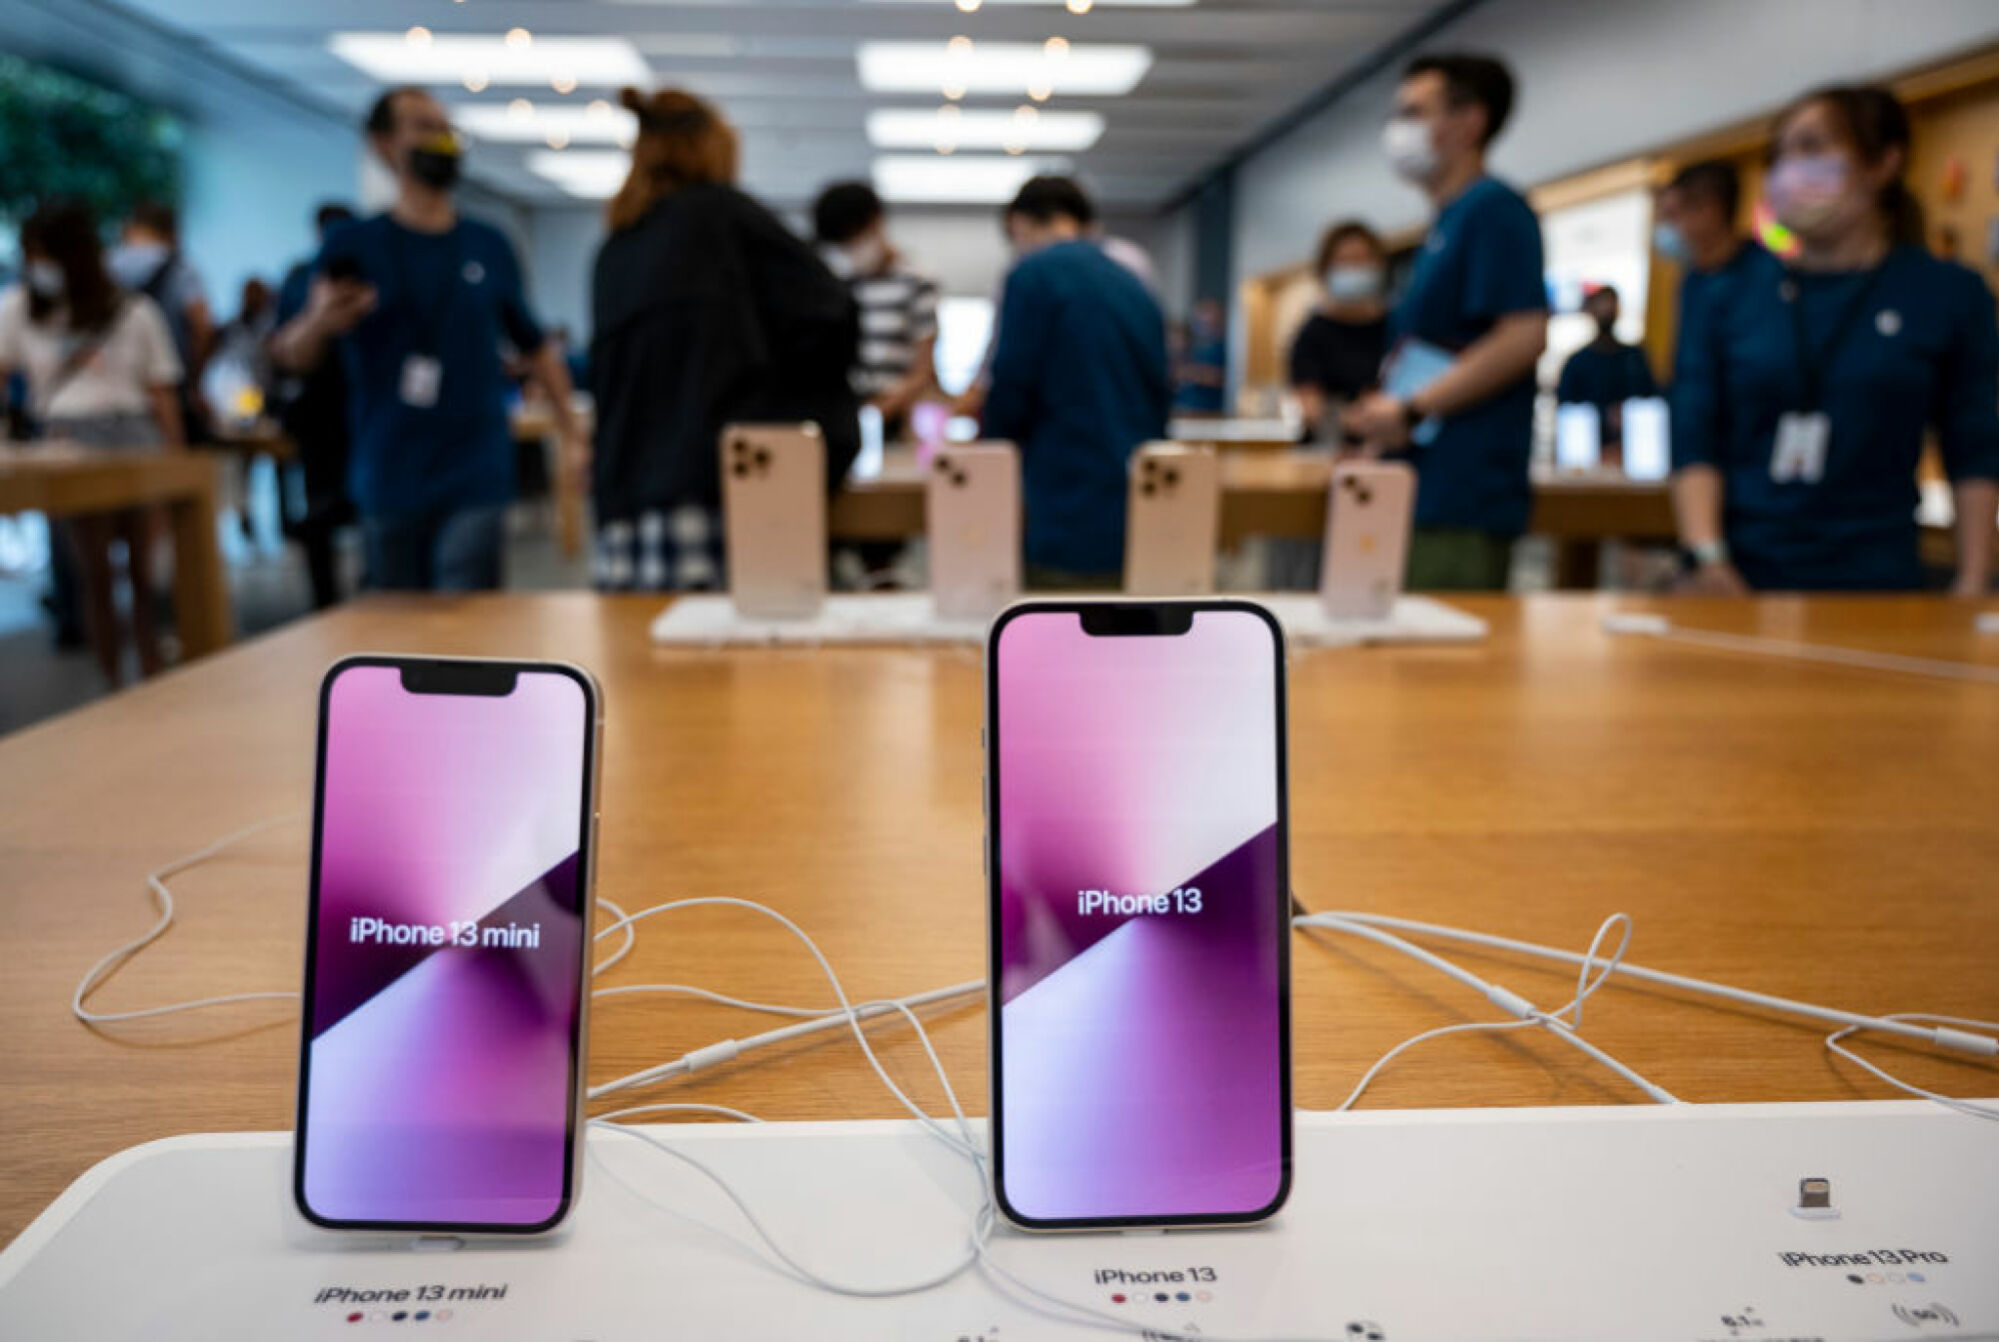 Dos iPhones en la tienda de Apple con sus nombres en la pantalla.  iPhone 13 mini a la izquierda, iPhone 13 a la derecha.